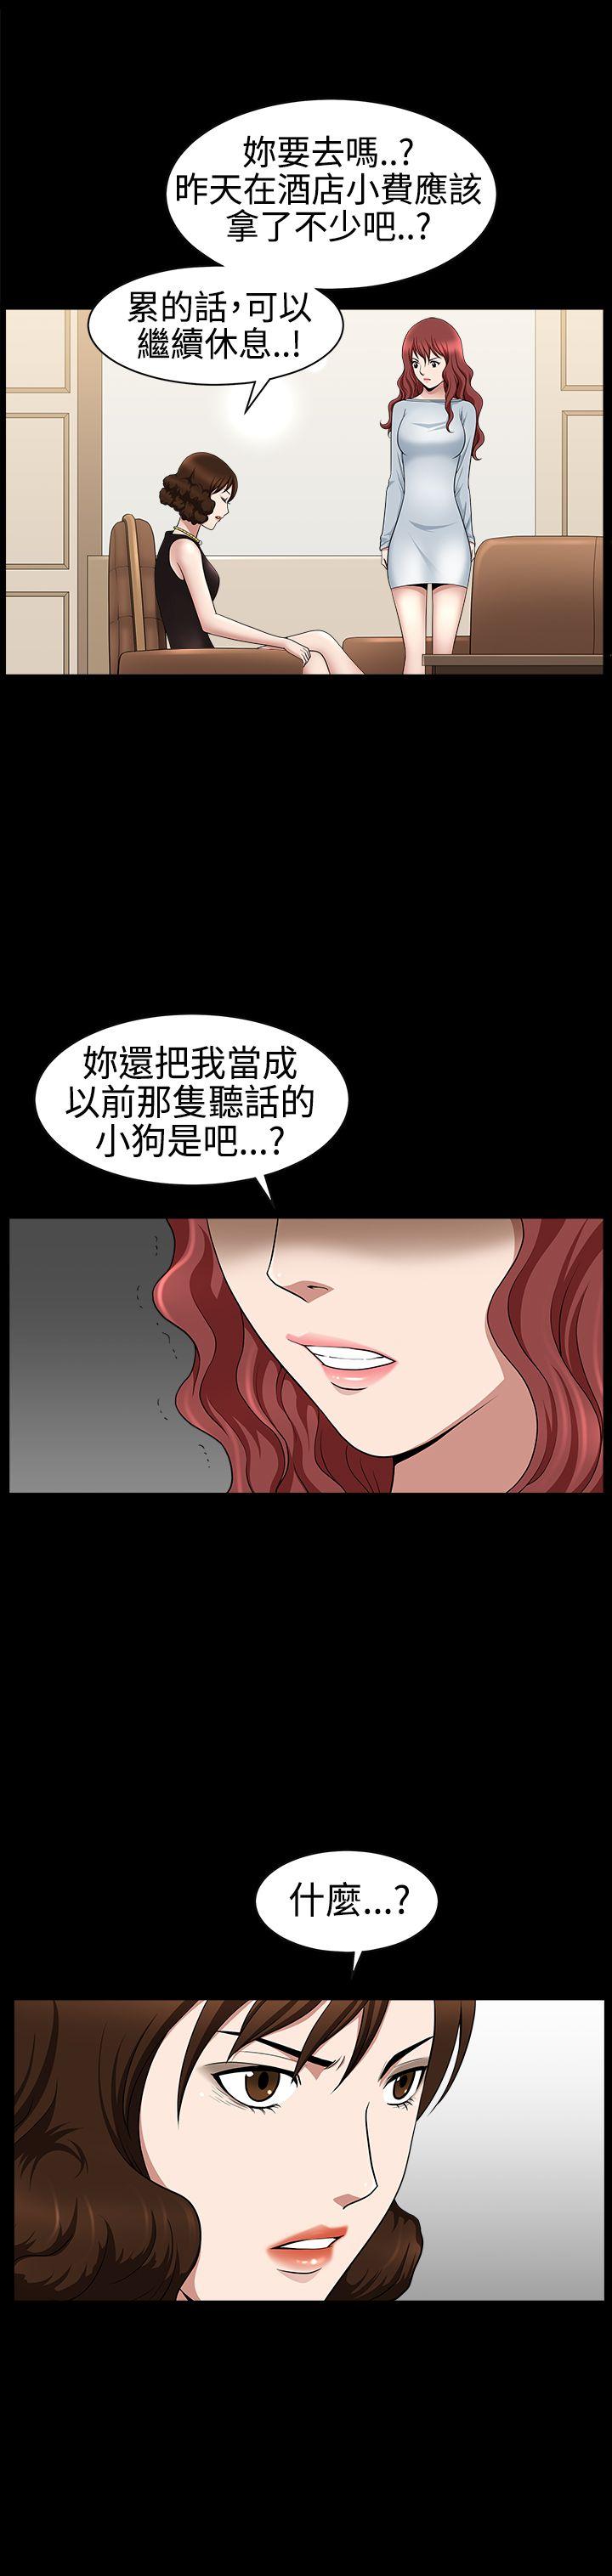 韩国污漫画 人妻性解放3:粗糙的手 第26话 31